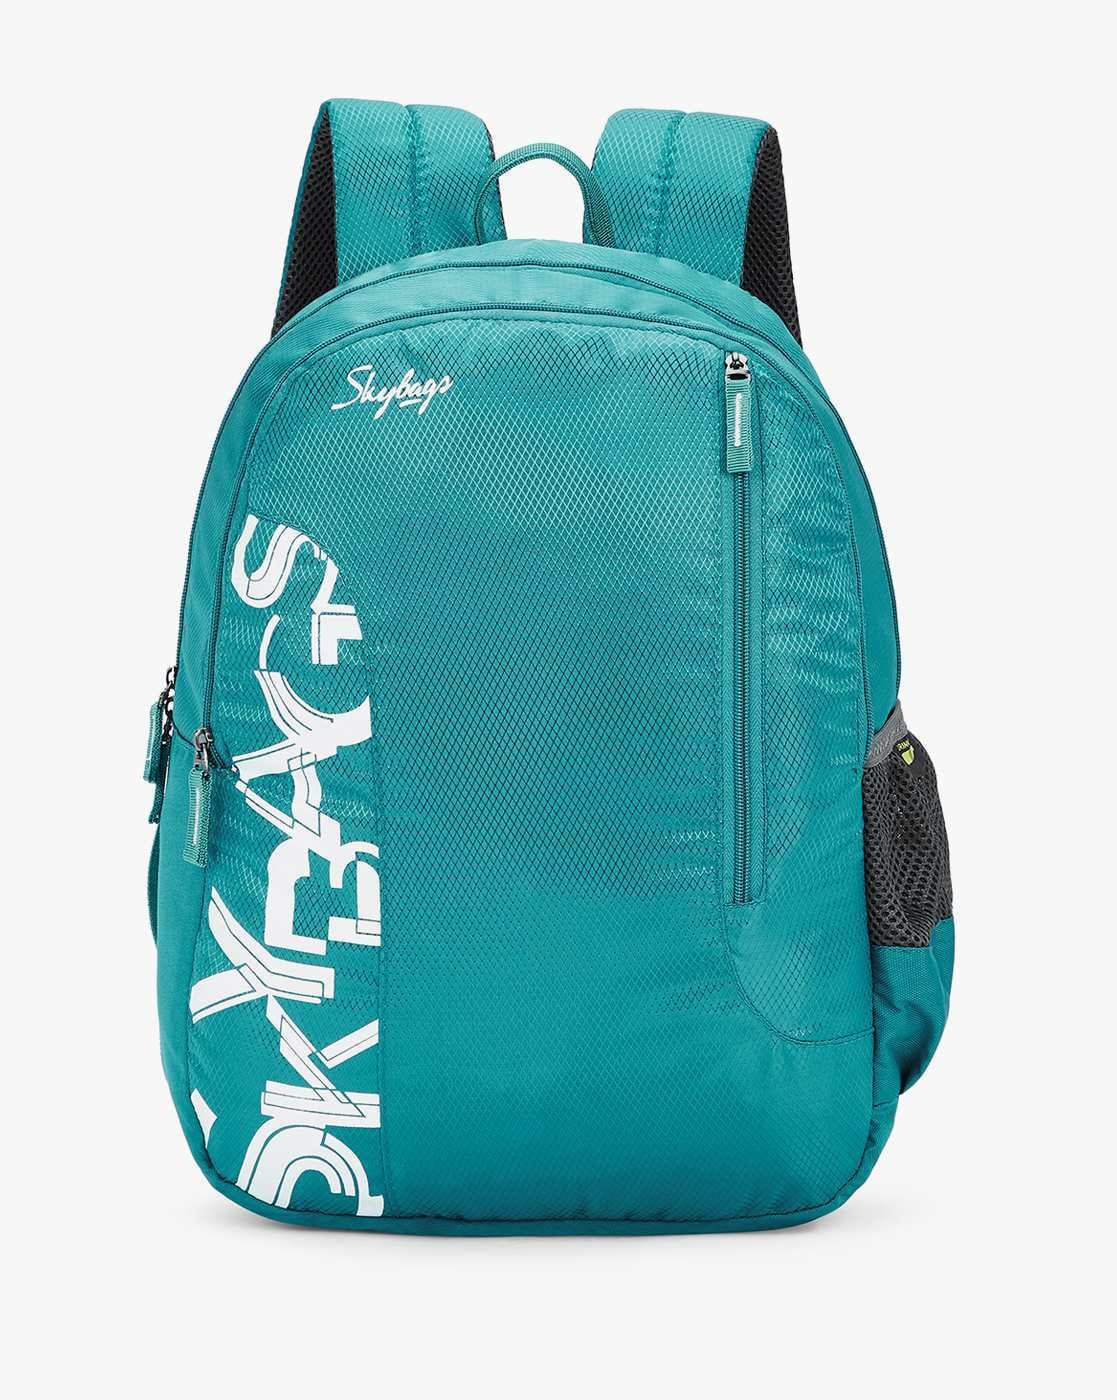 Buy Skybags Backpack Strike 01 Green Online - Lulu Hypermarket India